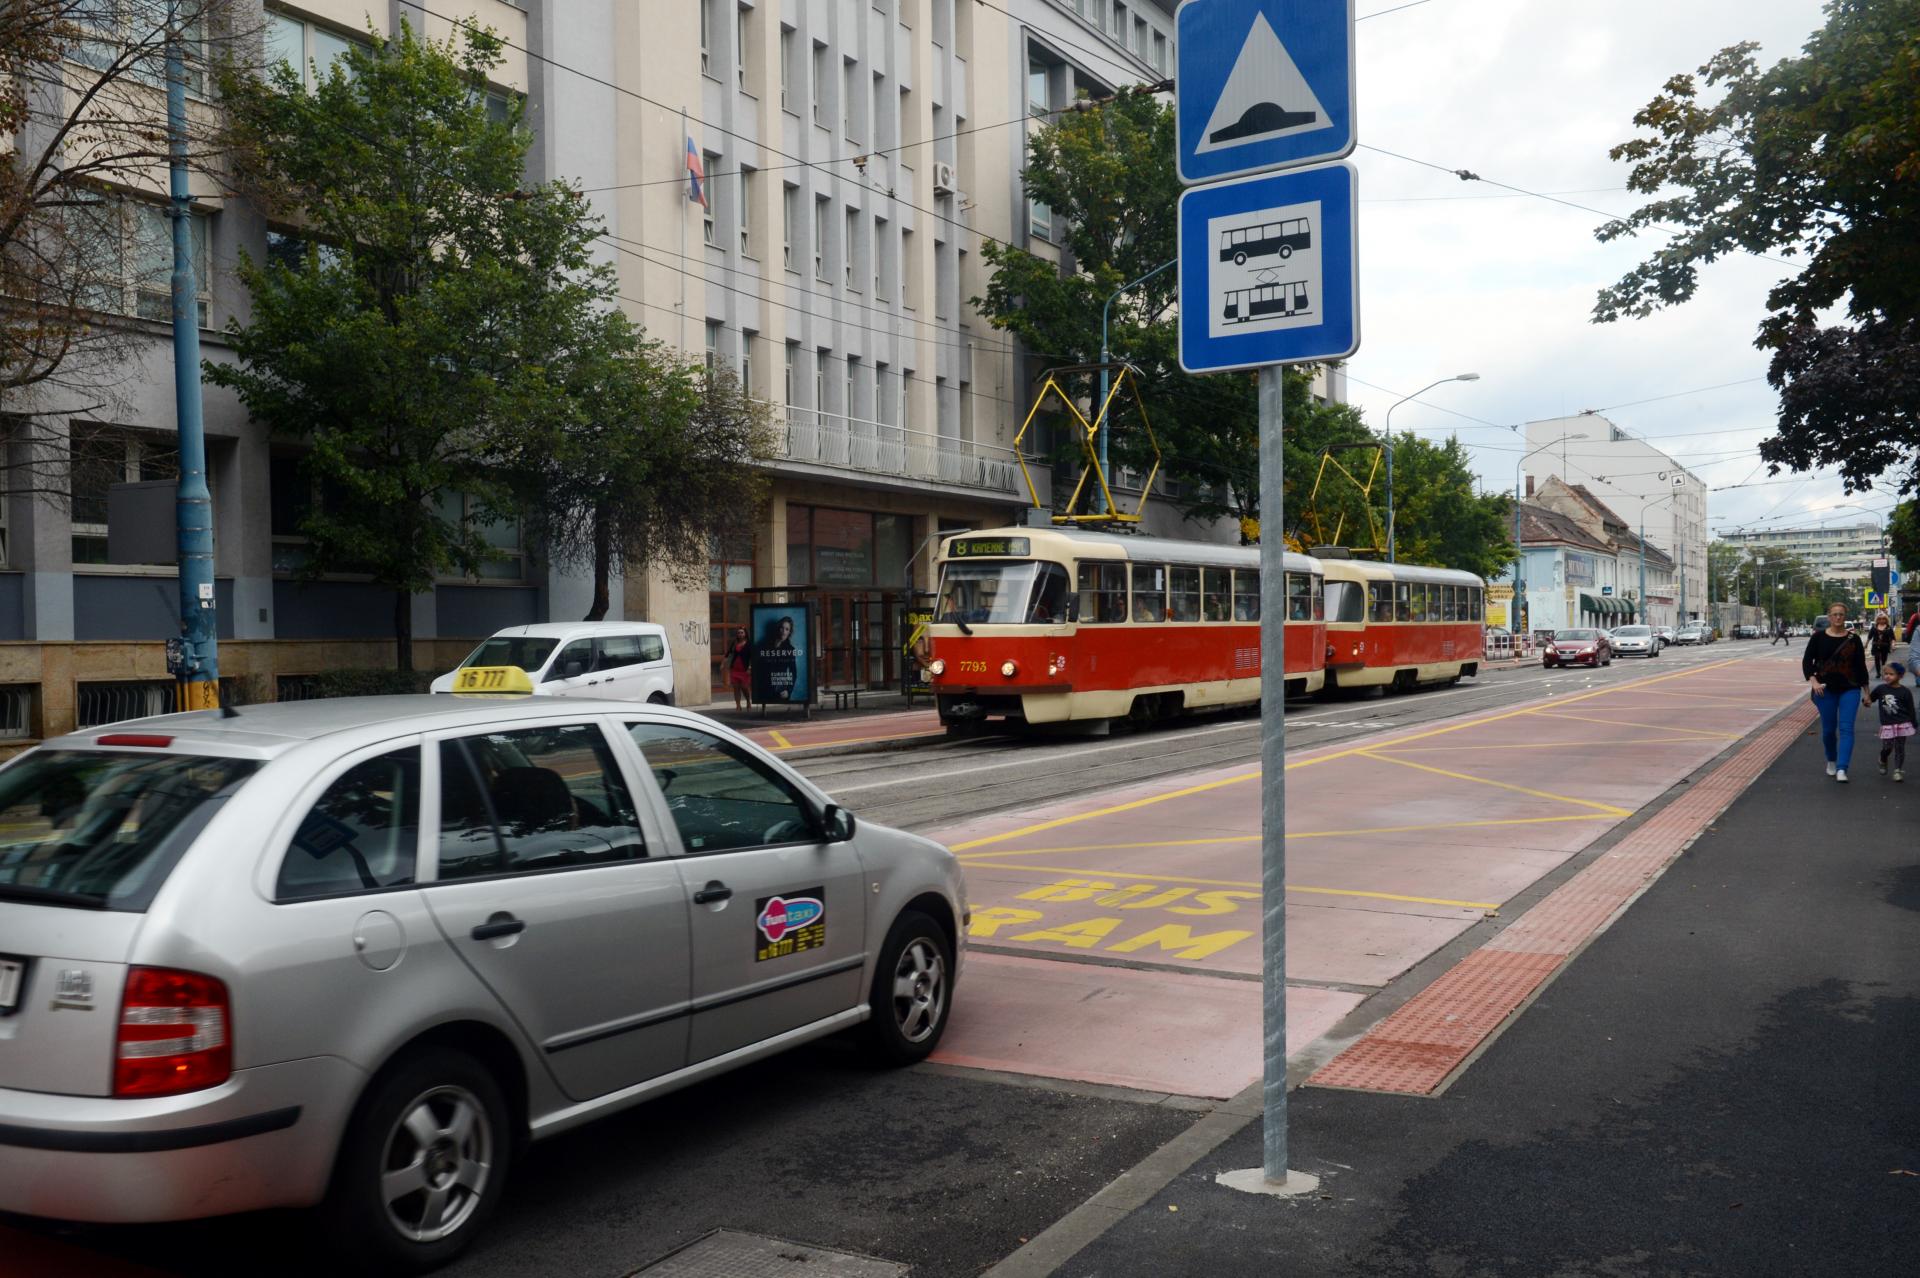 Obnova sa nestretla s pochopením aktivistov. Bratislava sa roky sporí o kľúčový dopravný uzol